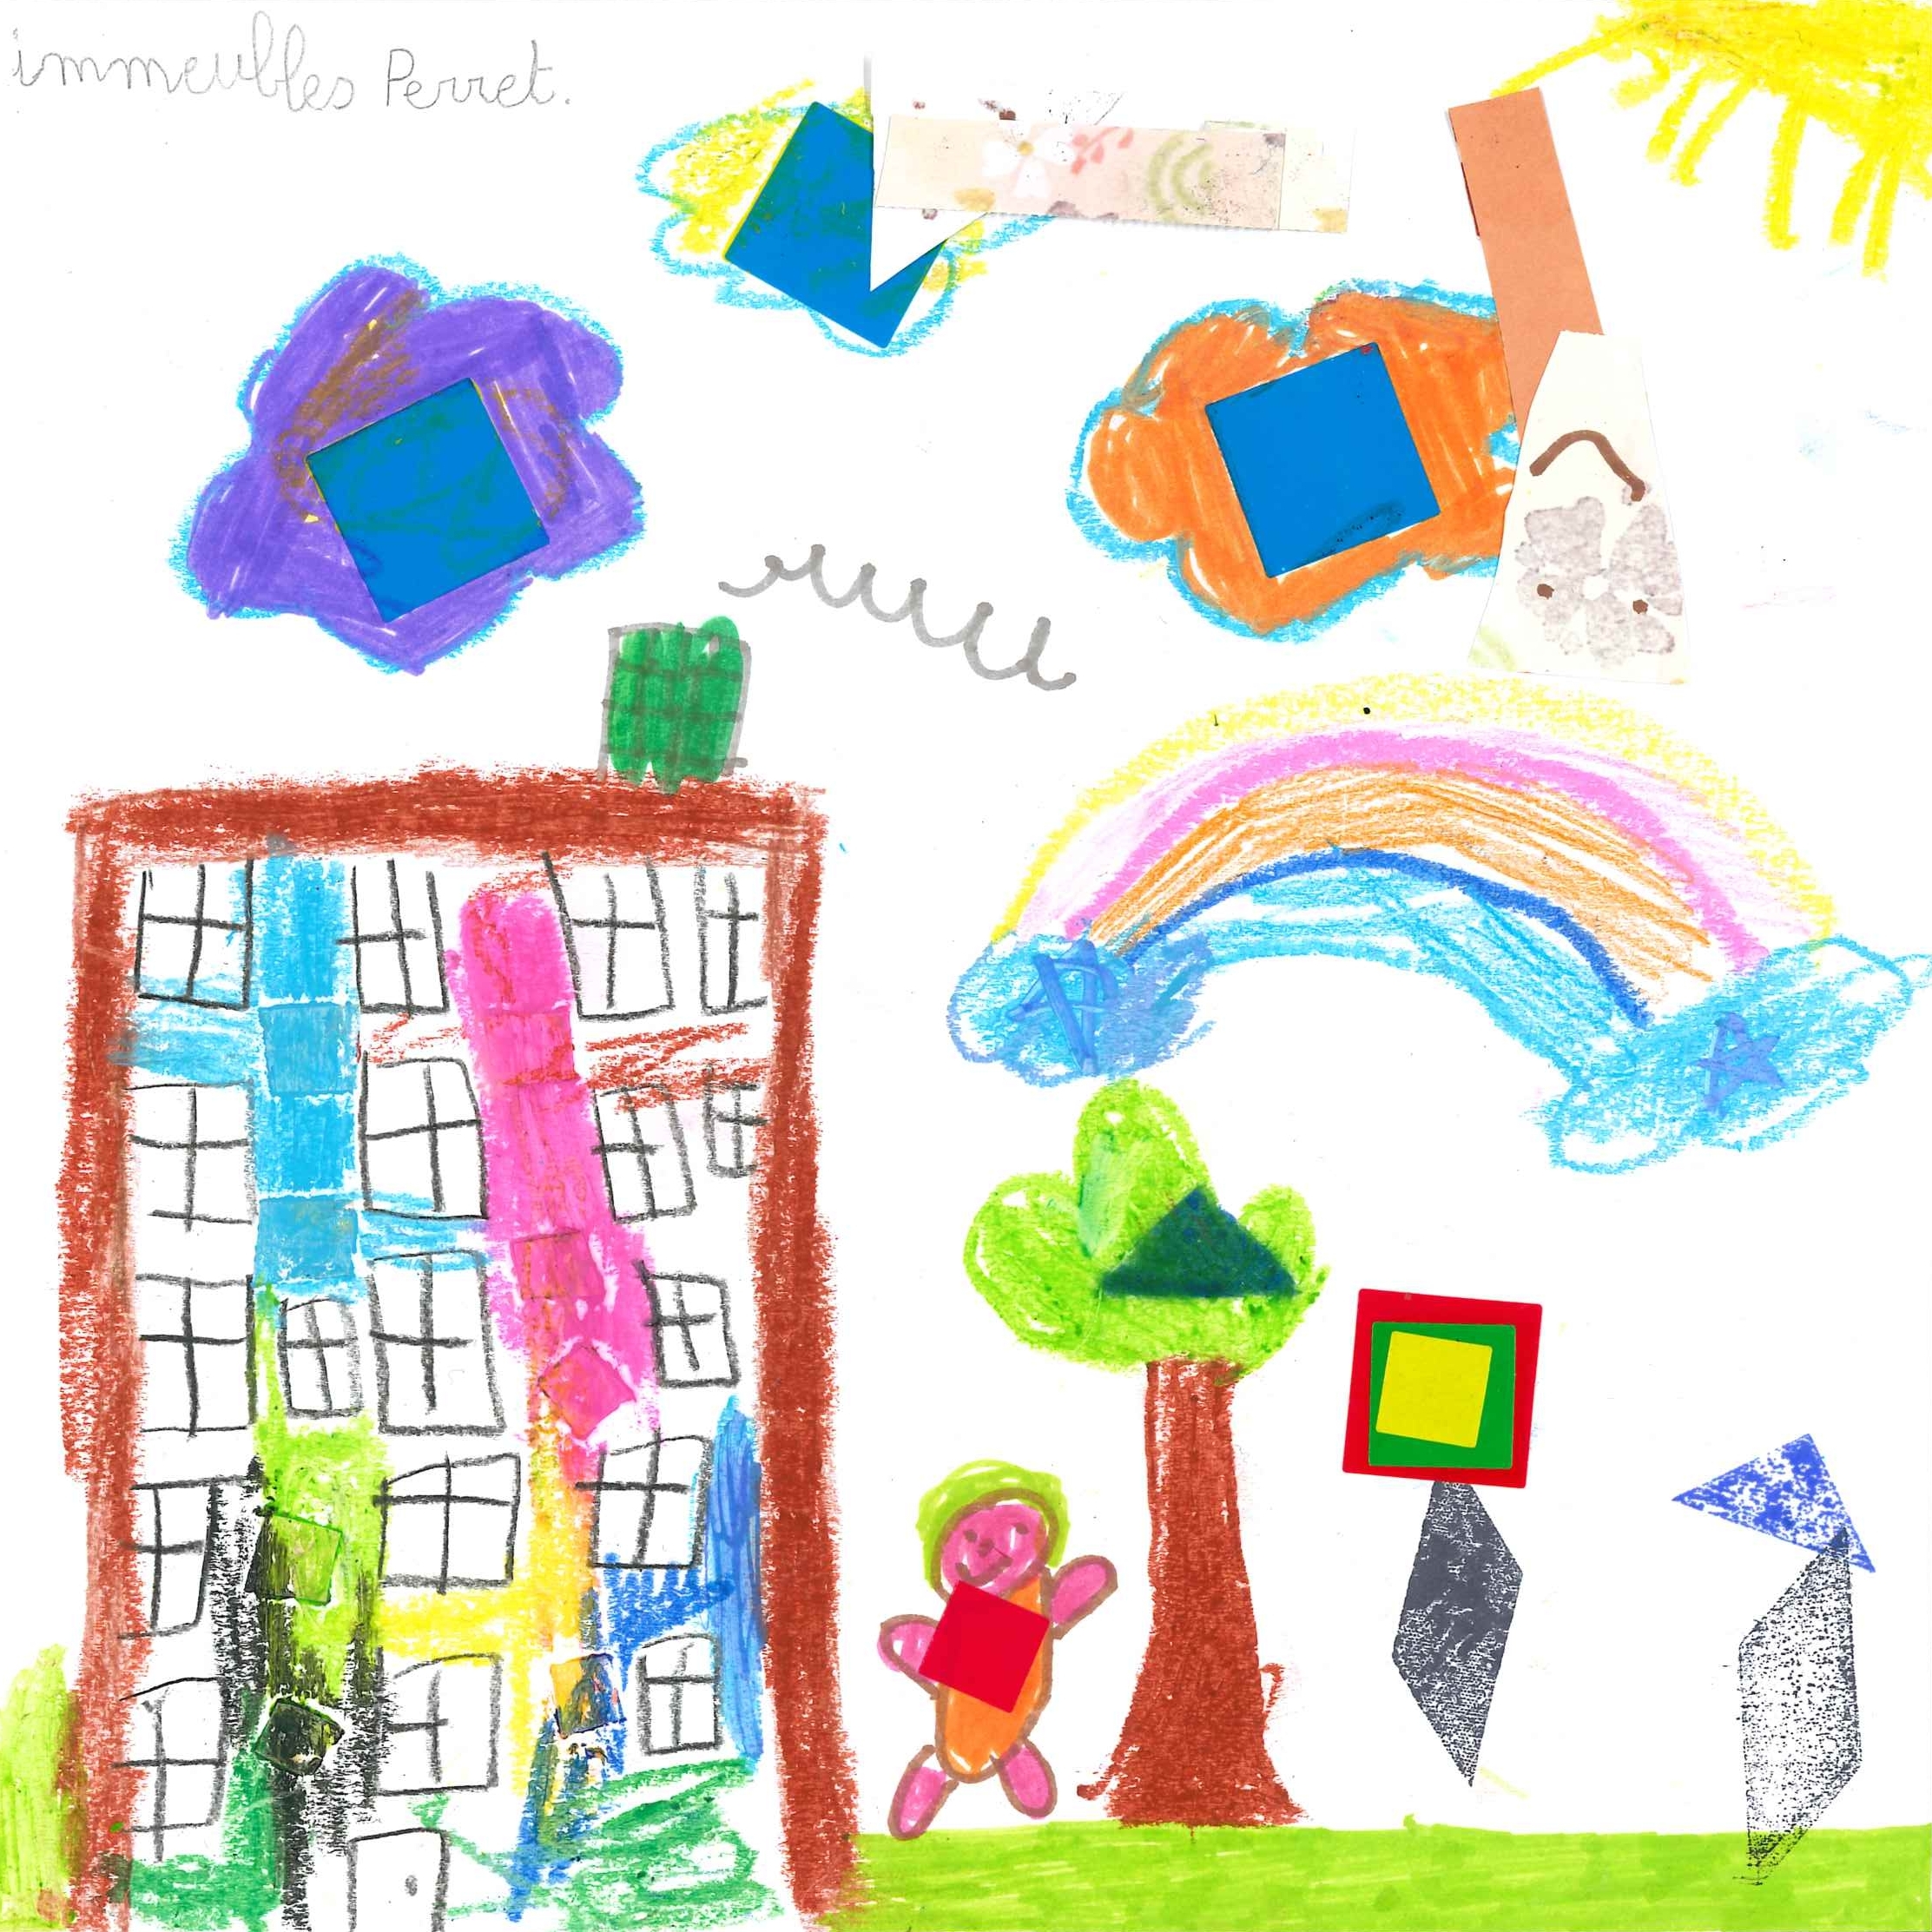 Dessin de Gabriela (7 ans). Mot: Immeubles PerretTechnique: Pastels.